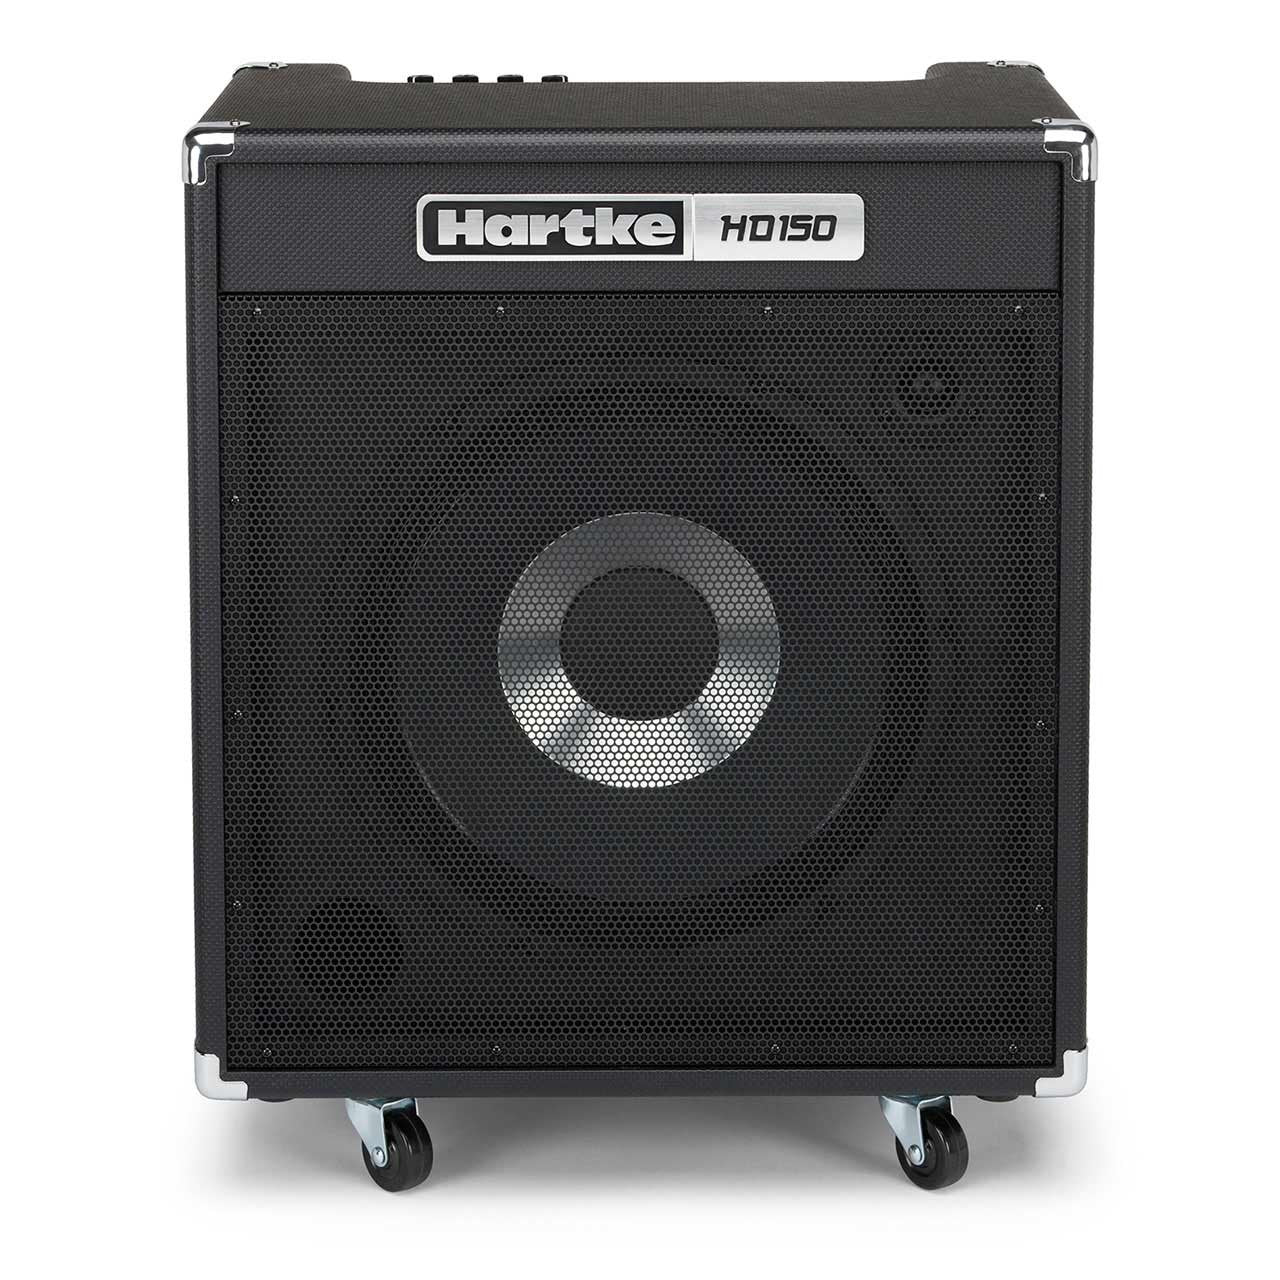 HARTKE HD150, HARTKE, BASS AMPLIFIER, hartke-hd150-bass-combo-amplifier, ZOSO MUSIC SDN BHD